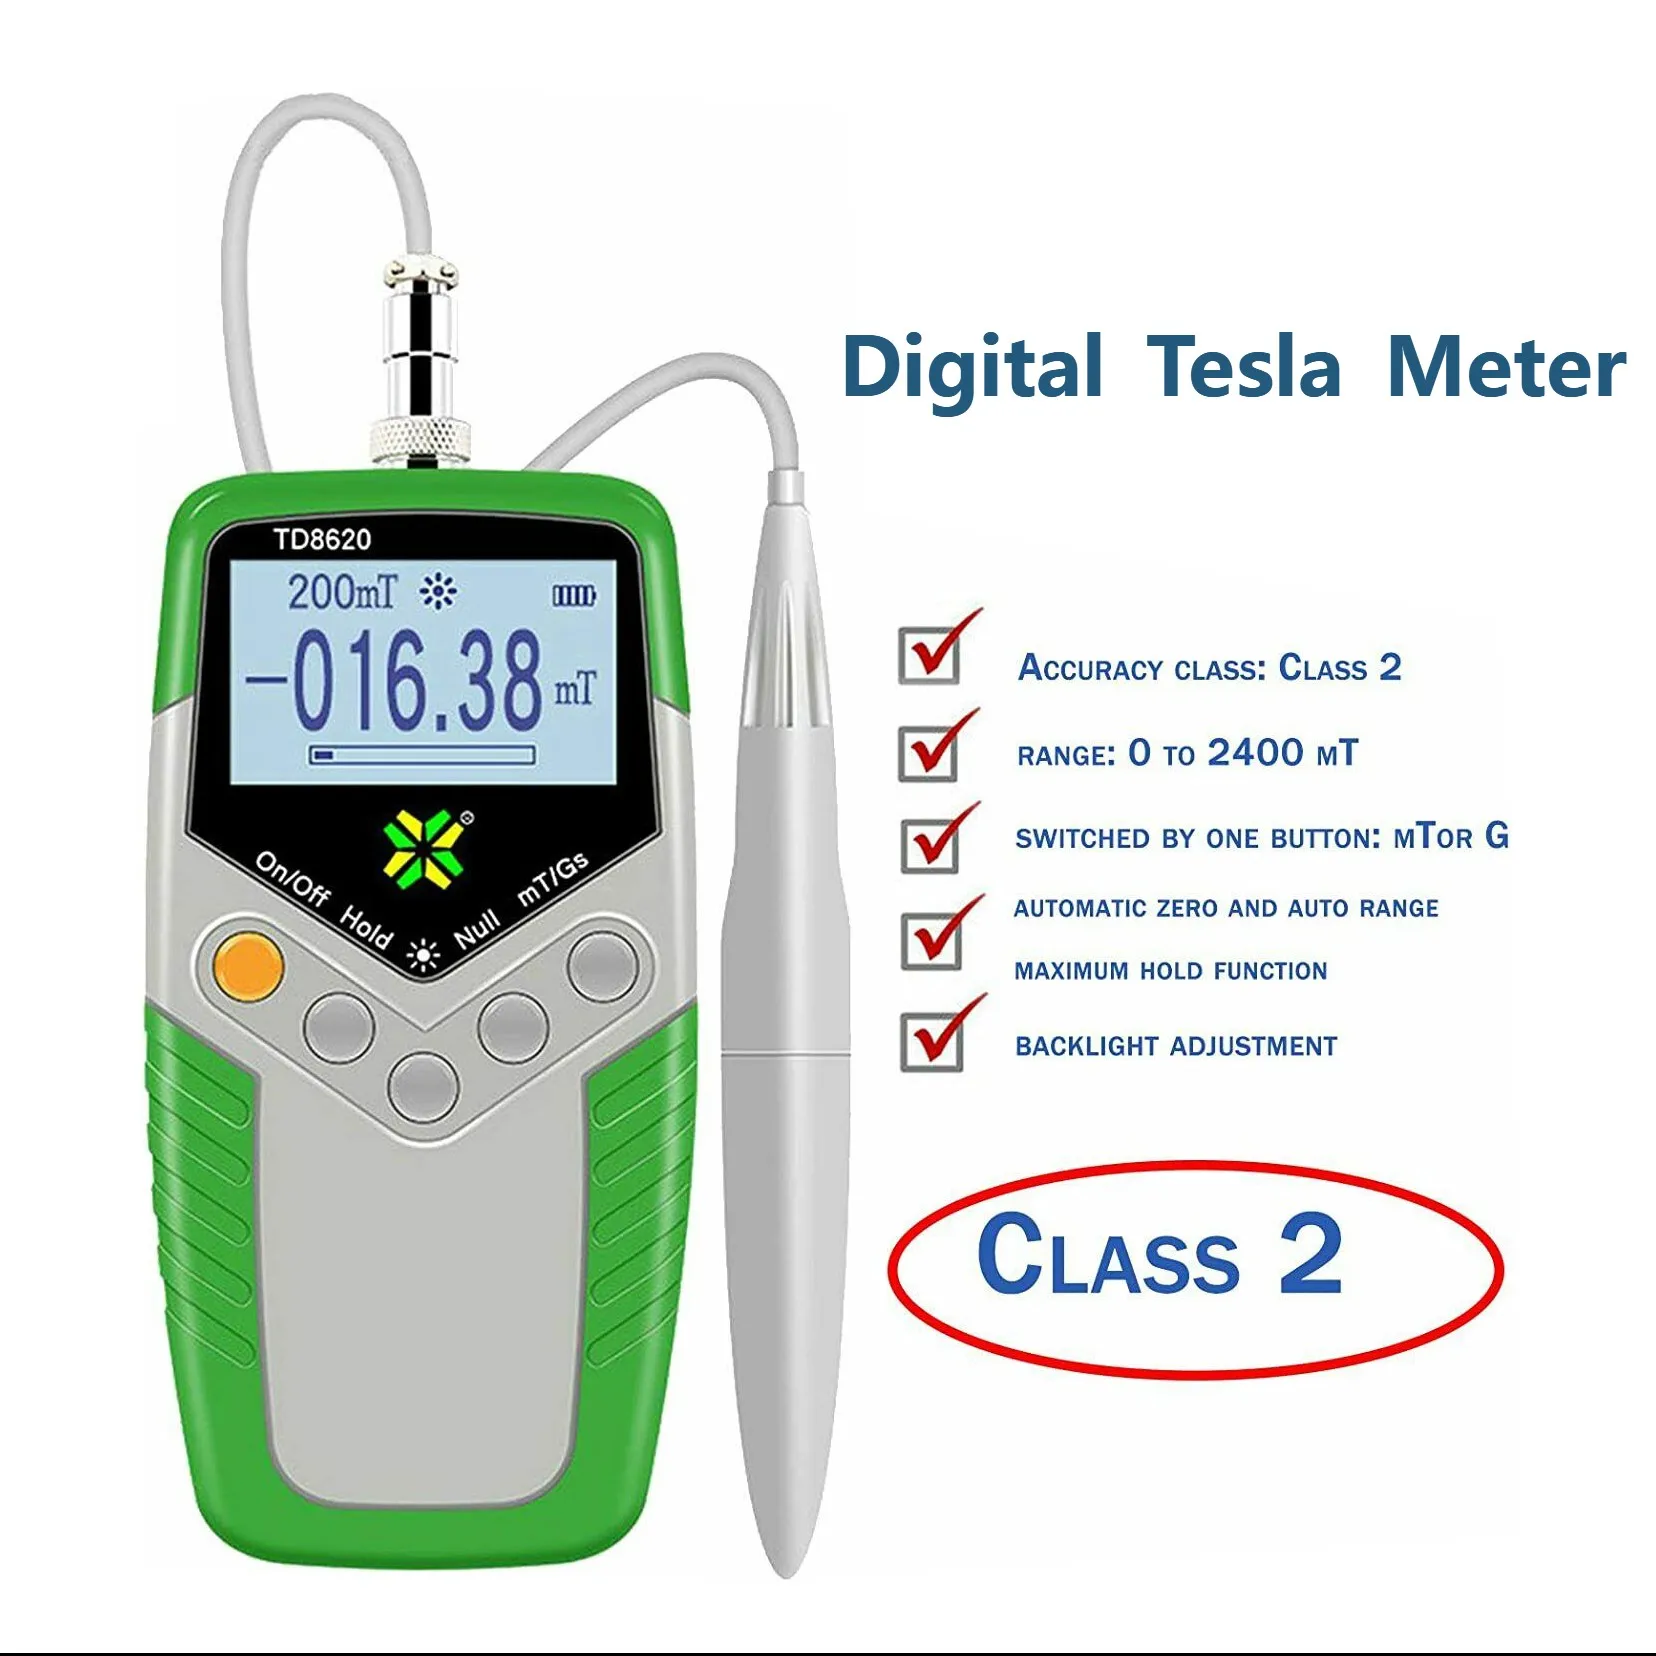 New Handheld Tesla Meter Teslameter Gauss Surface Magnetic Field Tester TD8620 